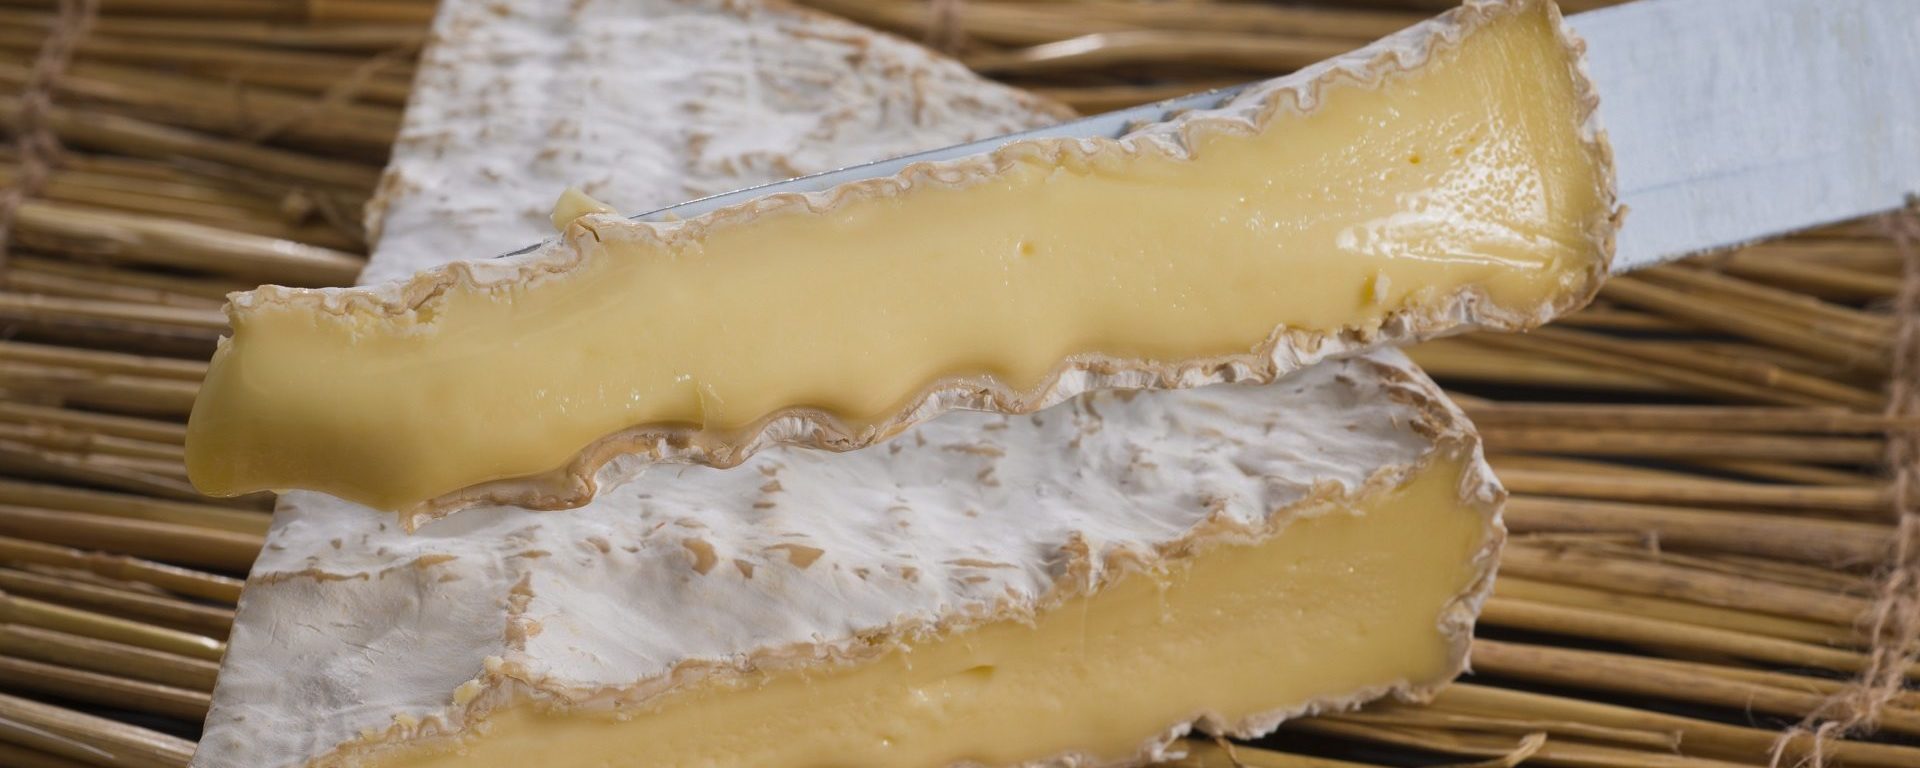 Le Brie de Meaux tranché